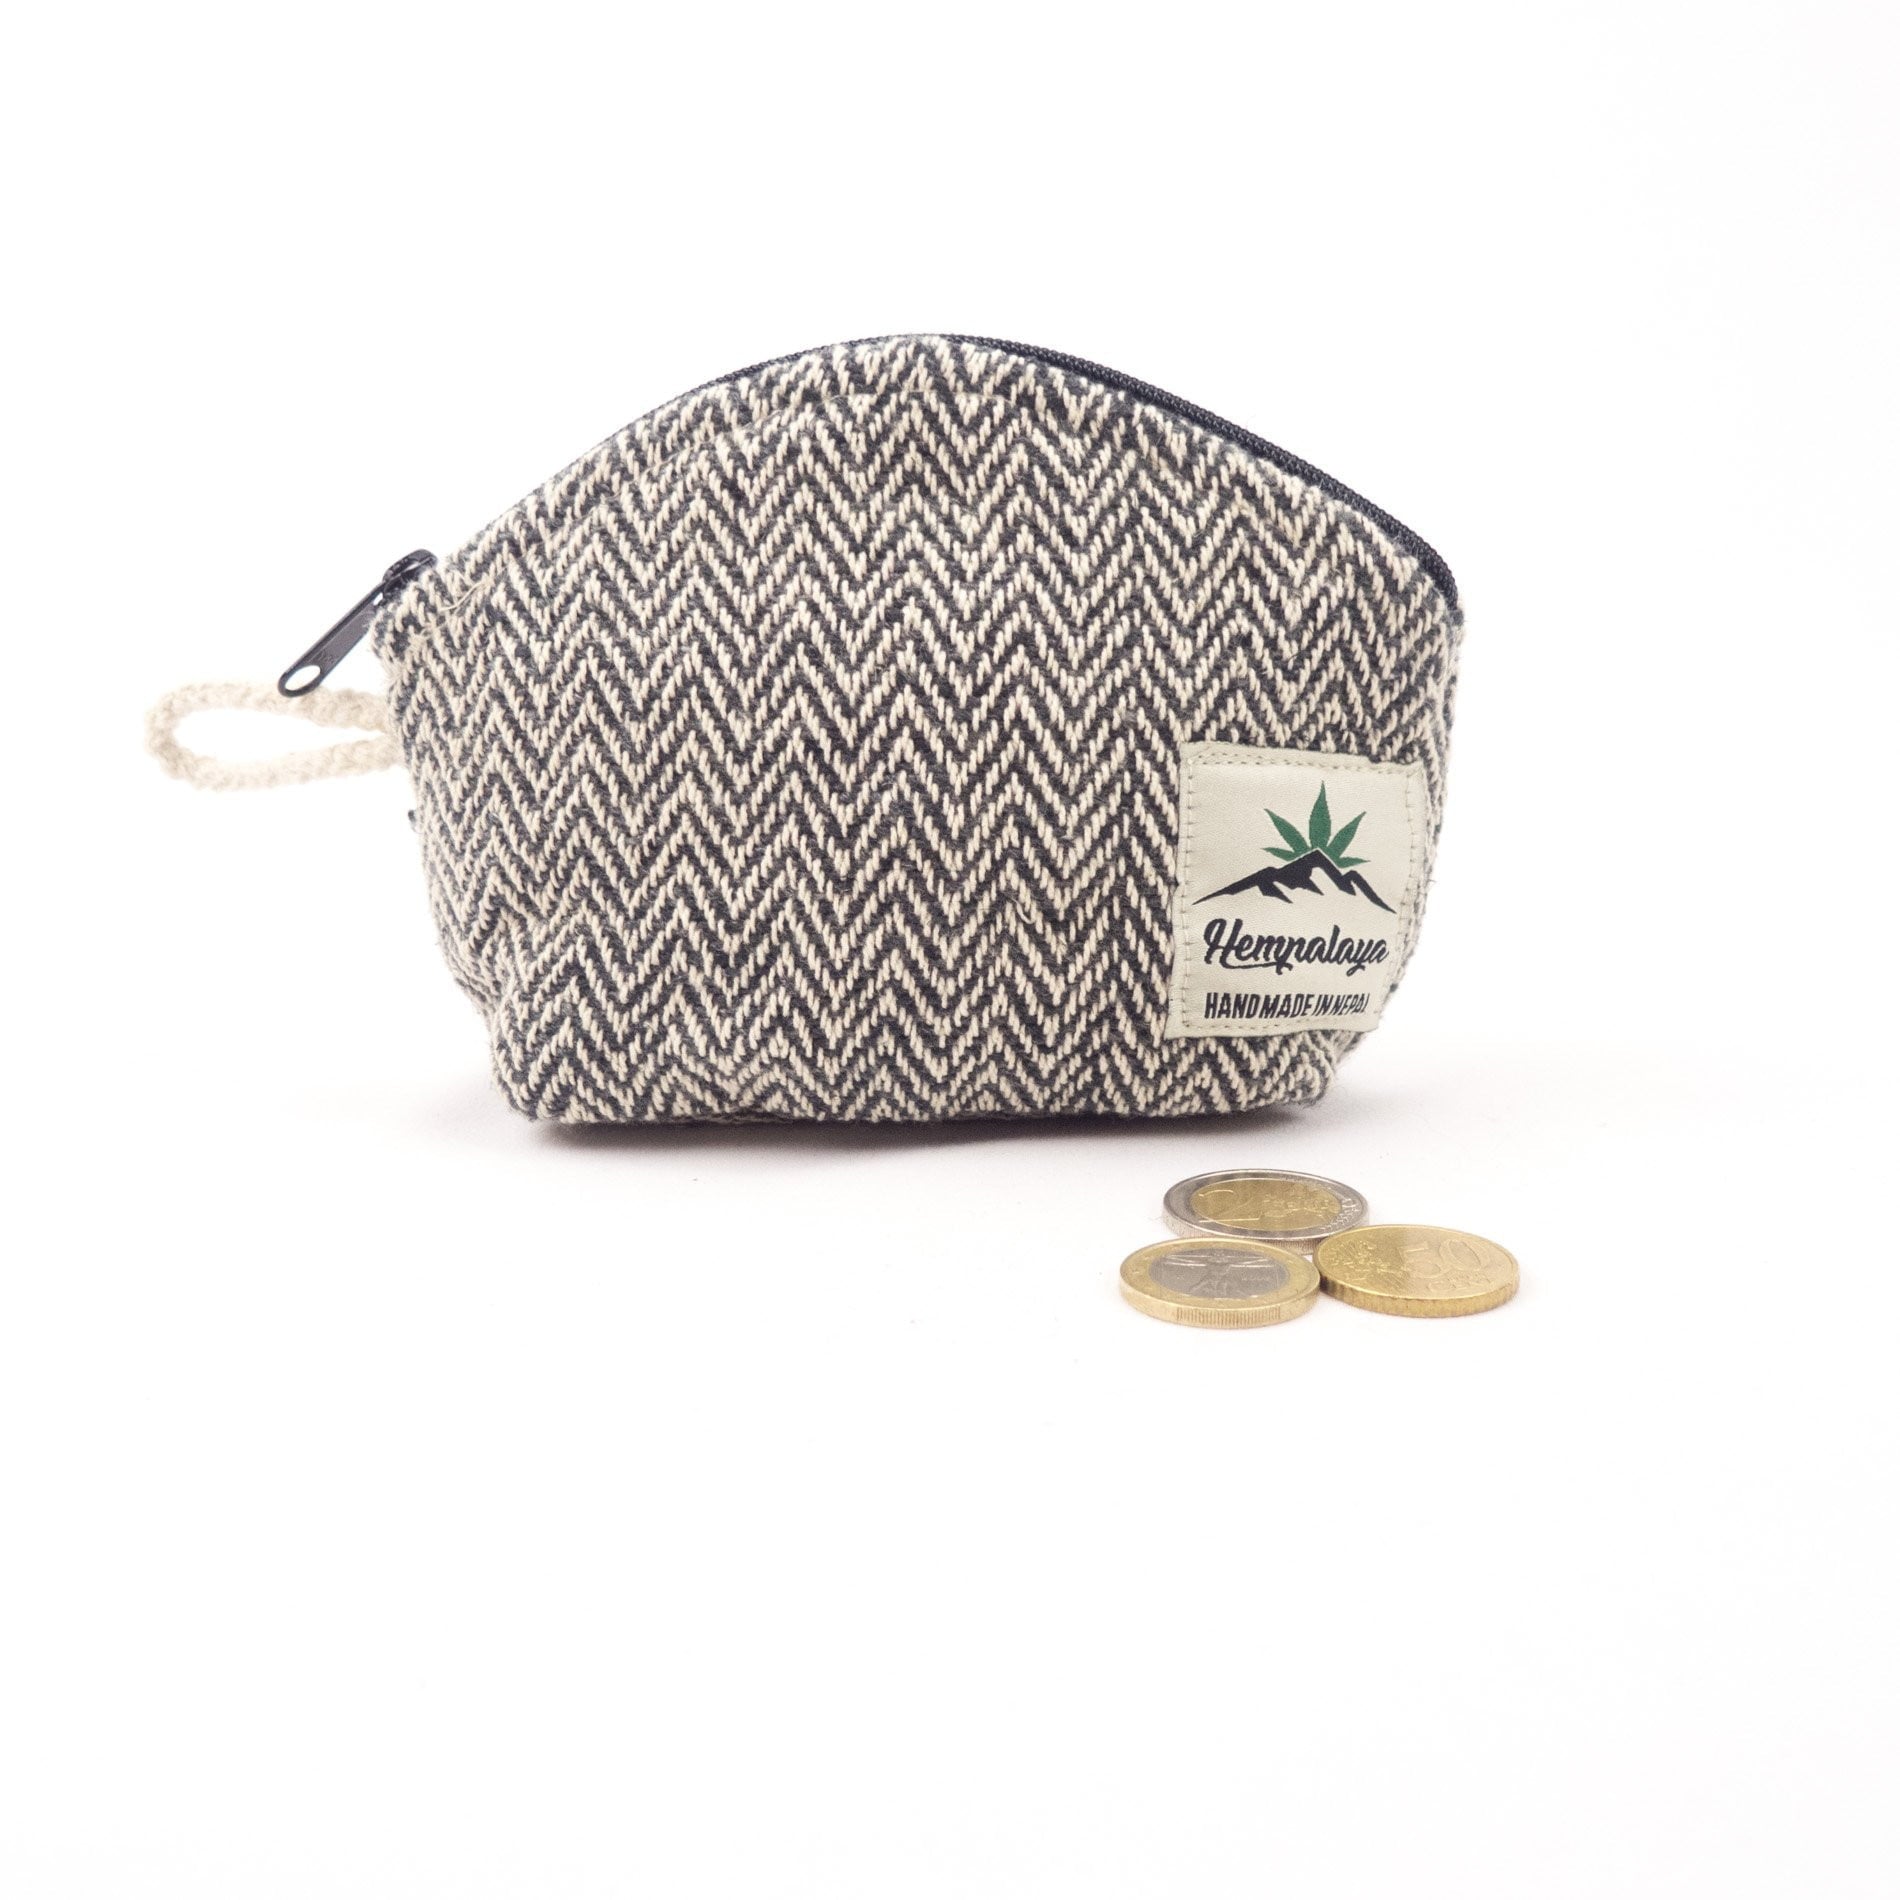 Hemp coin purse, change purse, black - Hempalaya